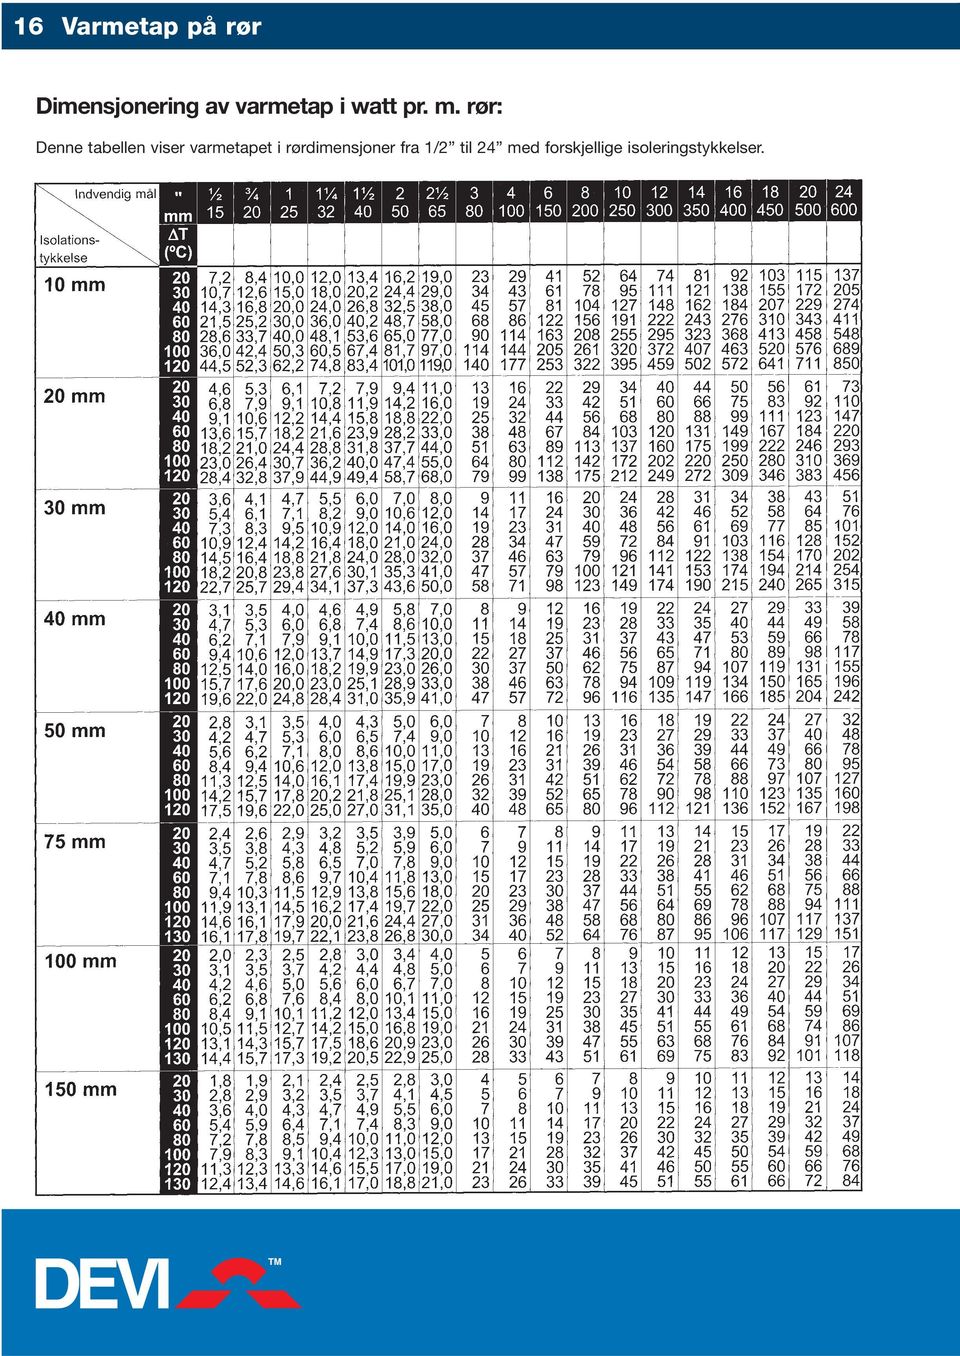 rør: Denne tabellen viser varmetapet i